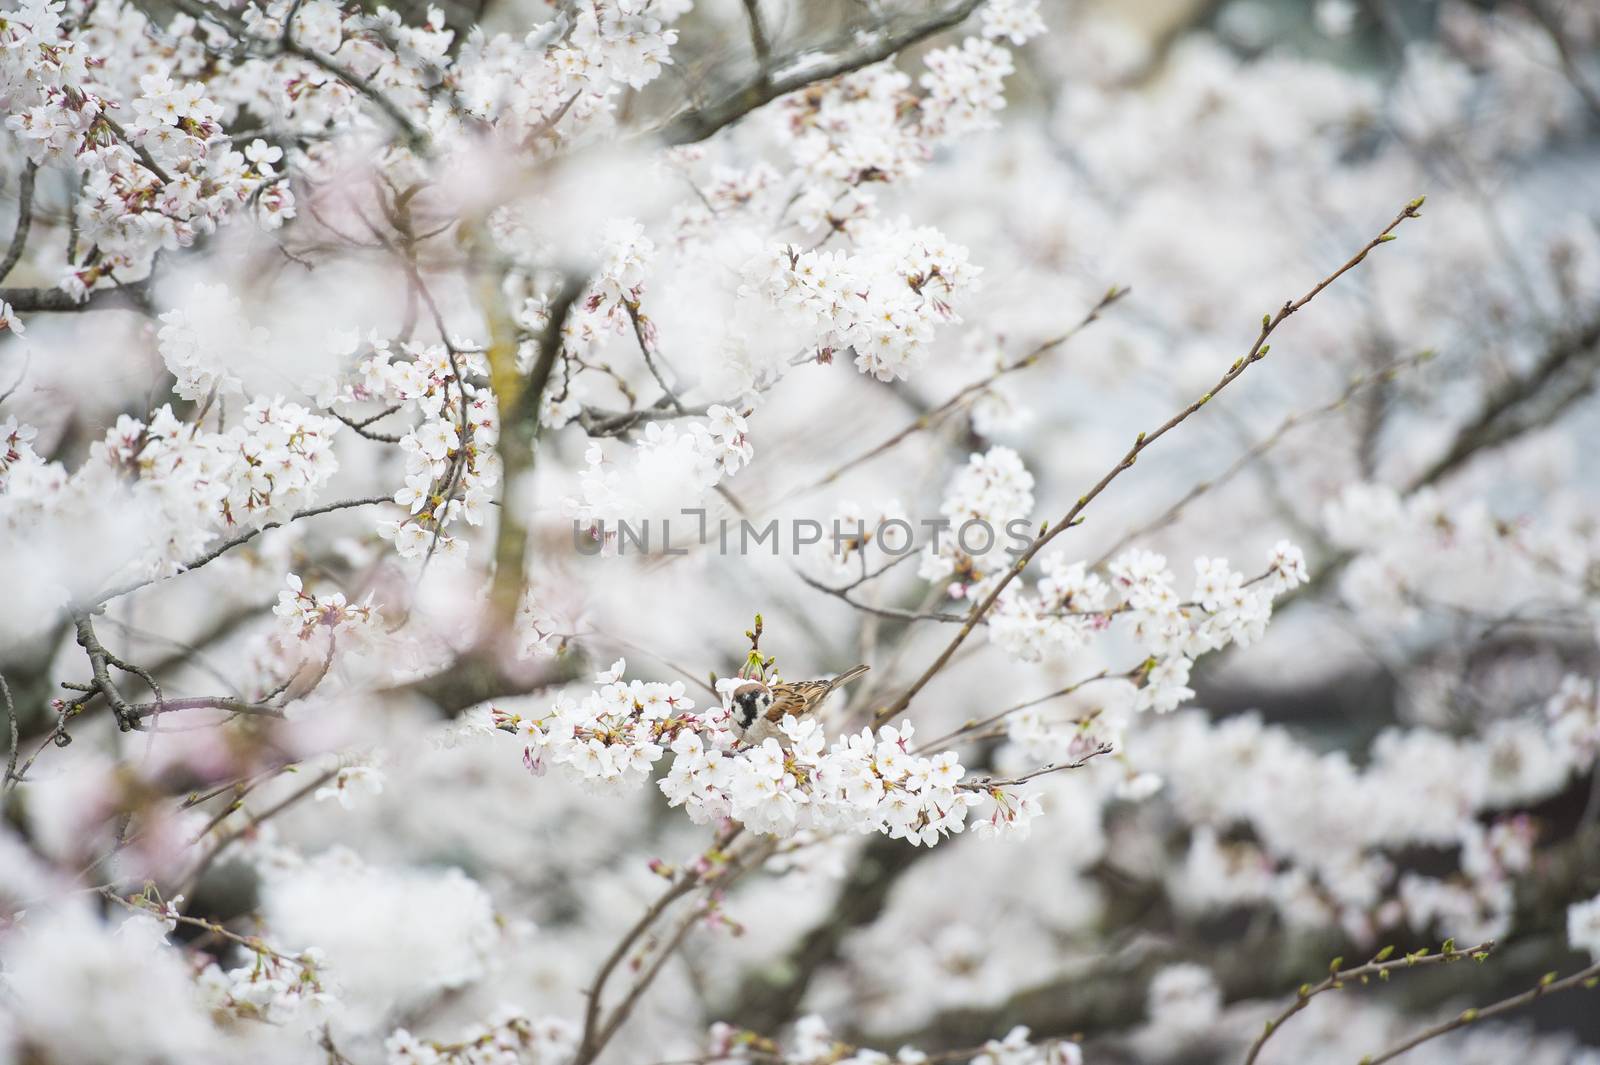 Japanese white flower and little bird by Surasak